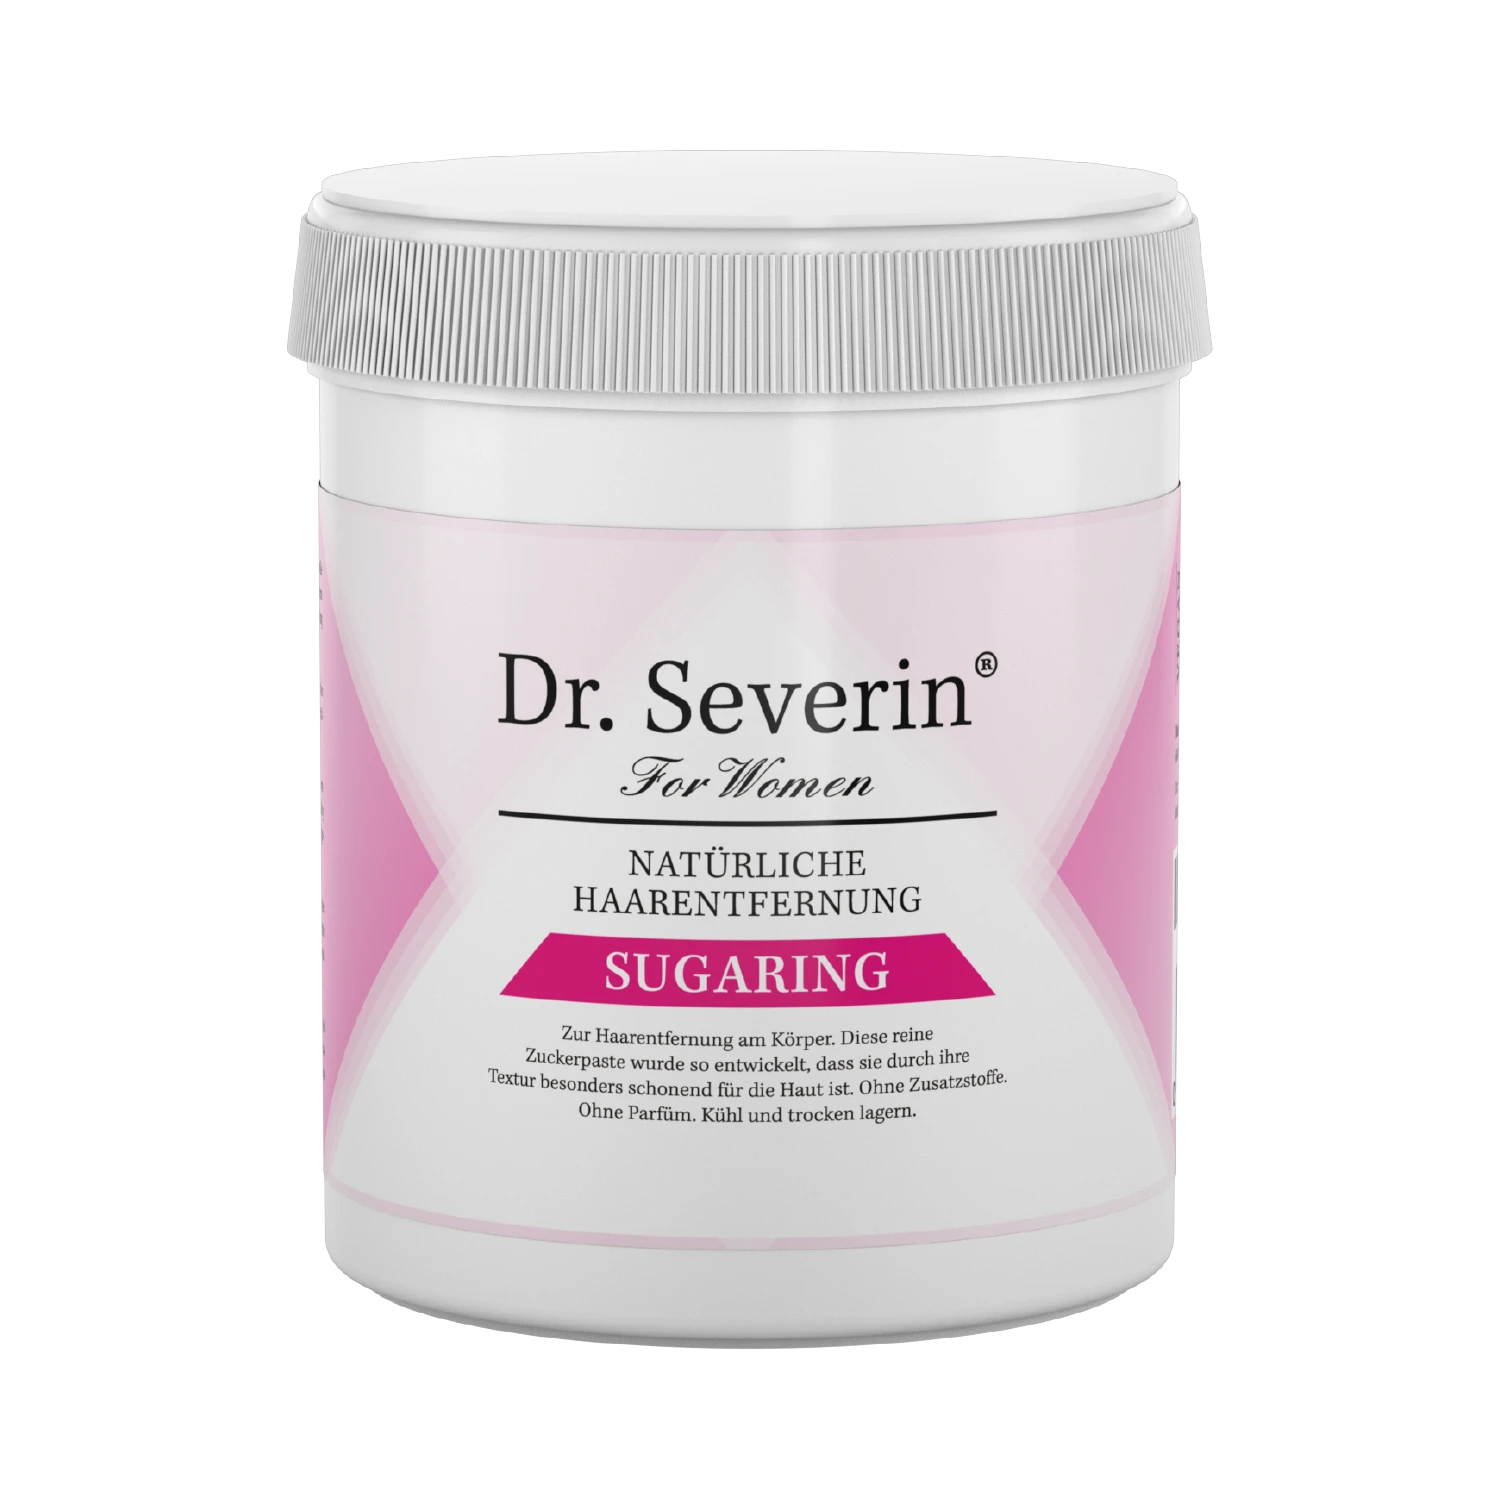 Natürliche, schmerzlose und gründliche Haarentfernung mit Zucker, Dr. Severin Sugaring